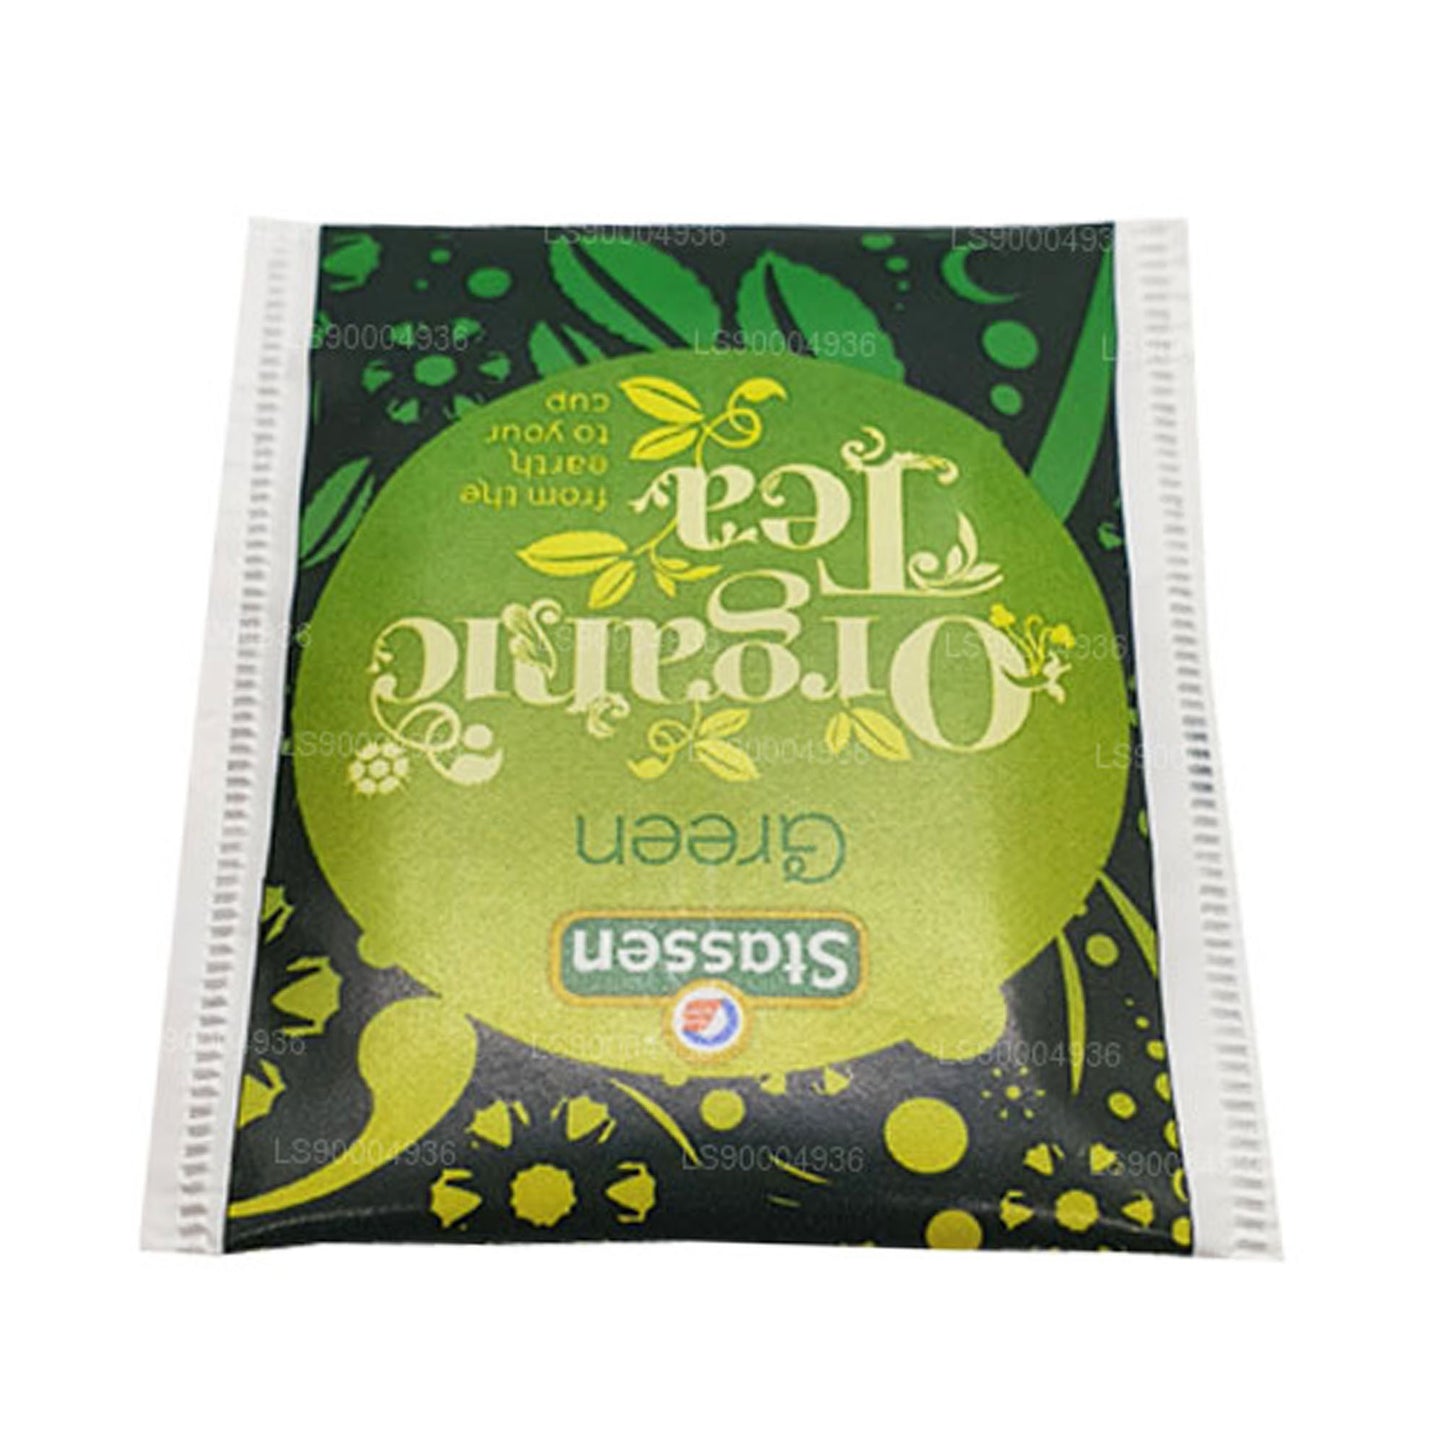 Thé vert biologique Stassen (50g) 25 sachets de thé